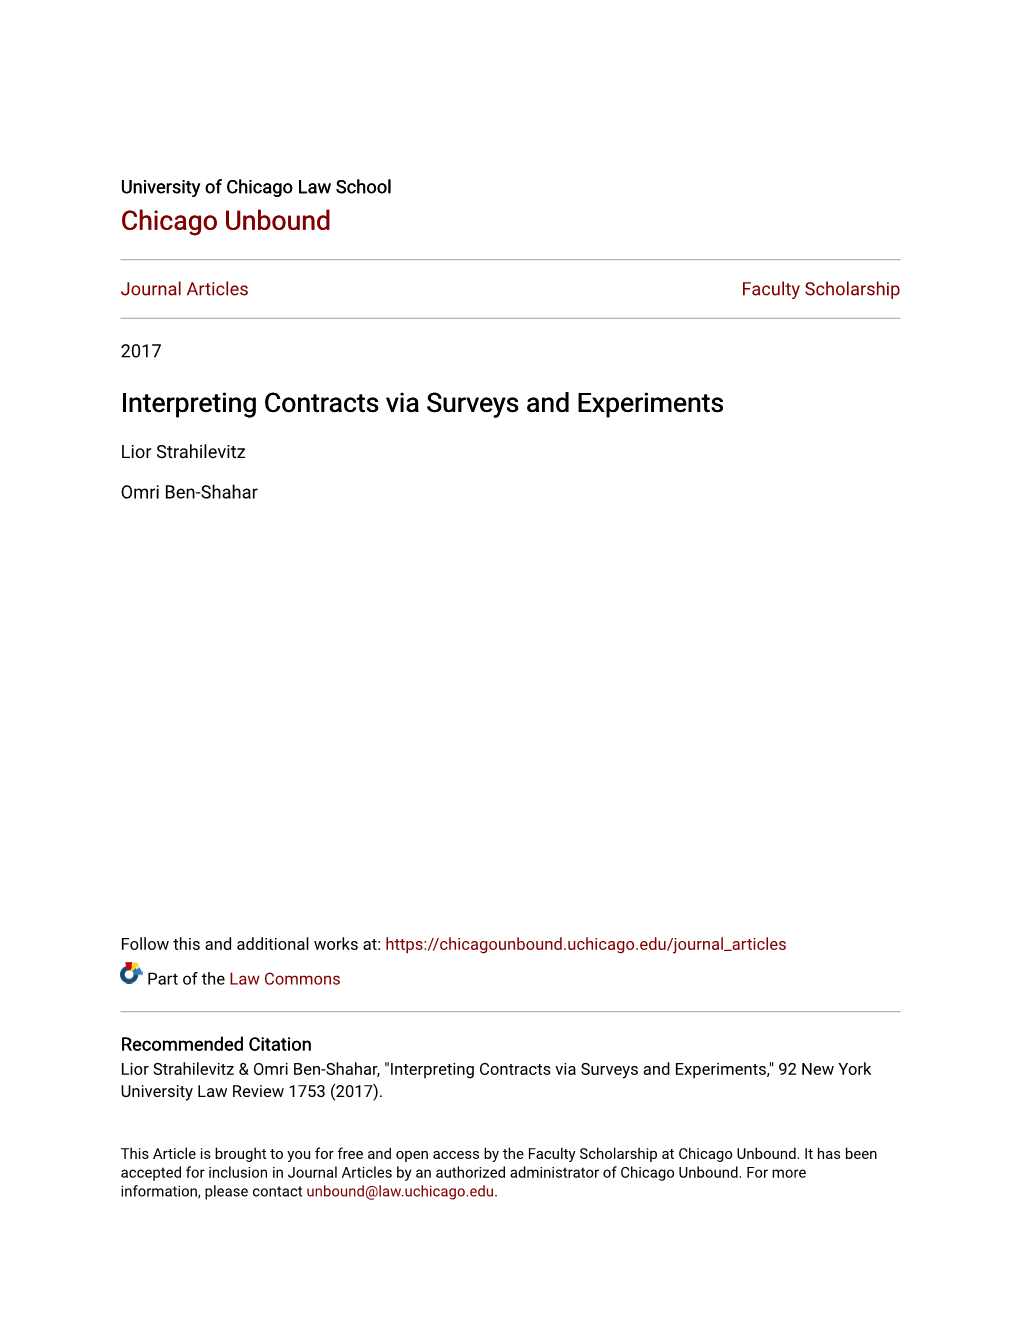 Interpreting Contracts Via Surveys and Experiments